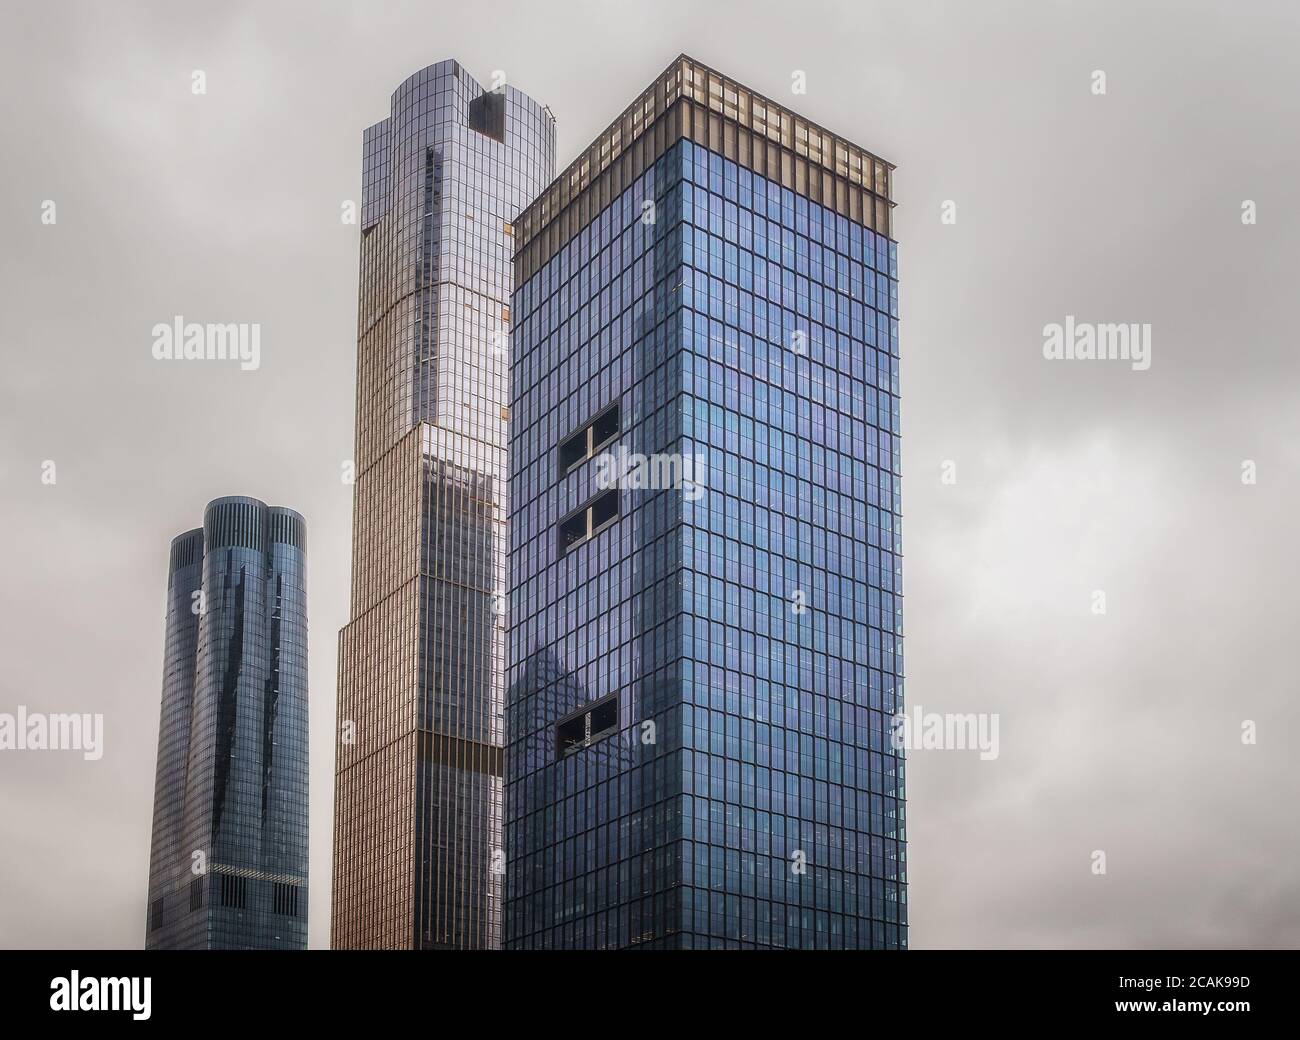 NYC, USA, mai 2019, vue sur la partie supérieure de trois gratte-ciel dans le quartier de Hudson yards, Manhattan Banque D'Images